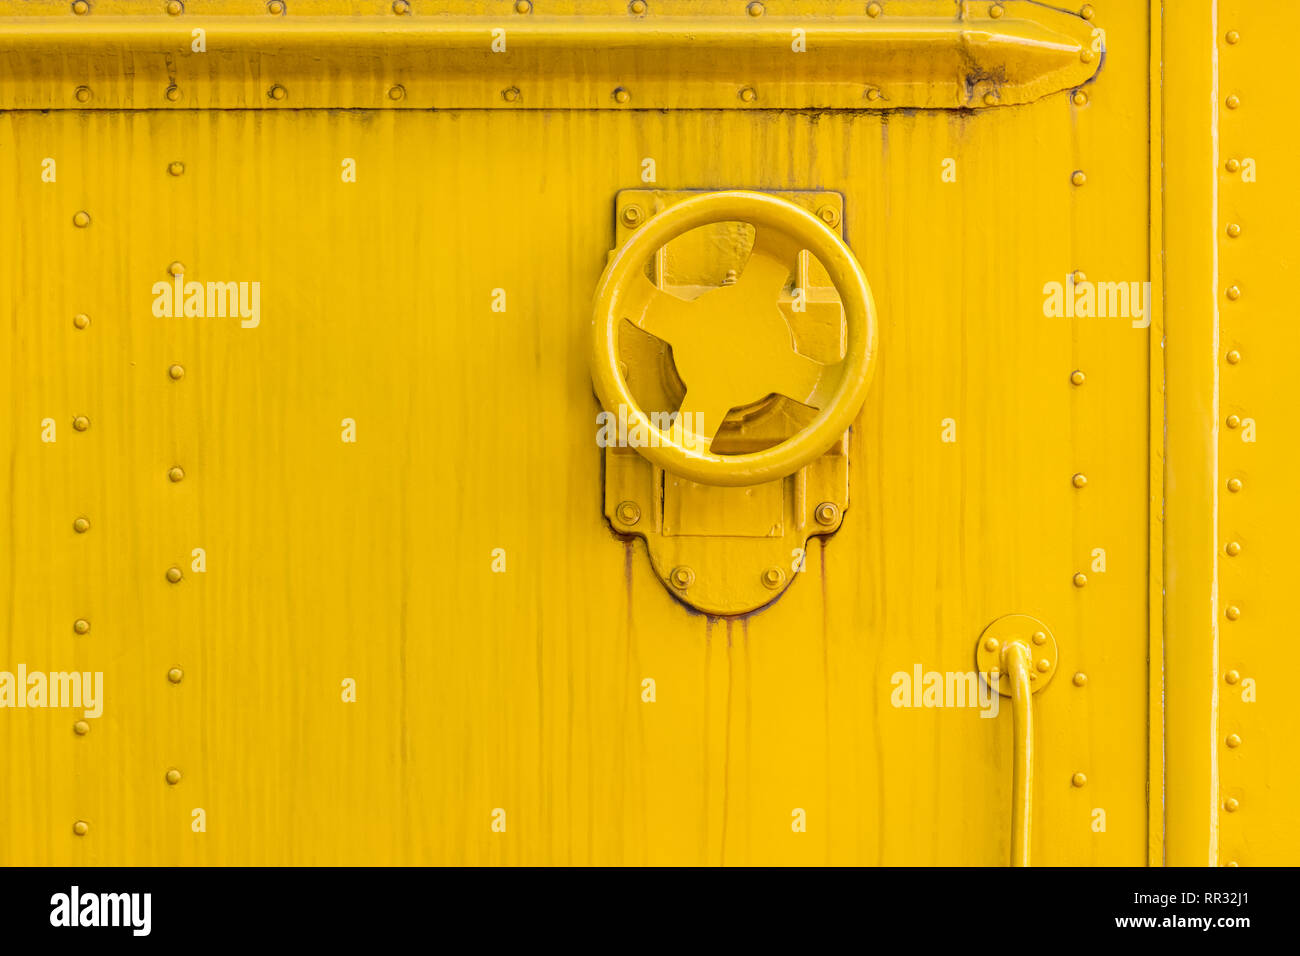 Industrielle Ventil Rad auf Gelb lackiertem Metall wand Oberfläche. grunge verwitterten Hintergrund Stockfoto